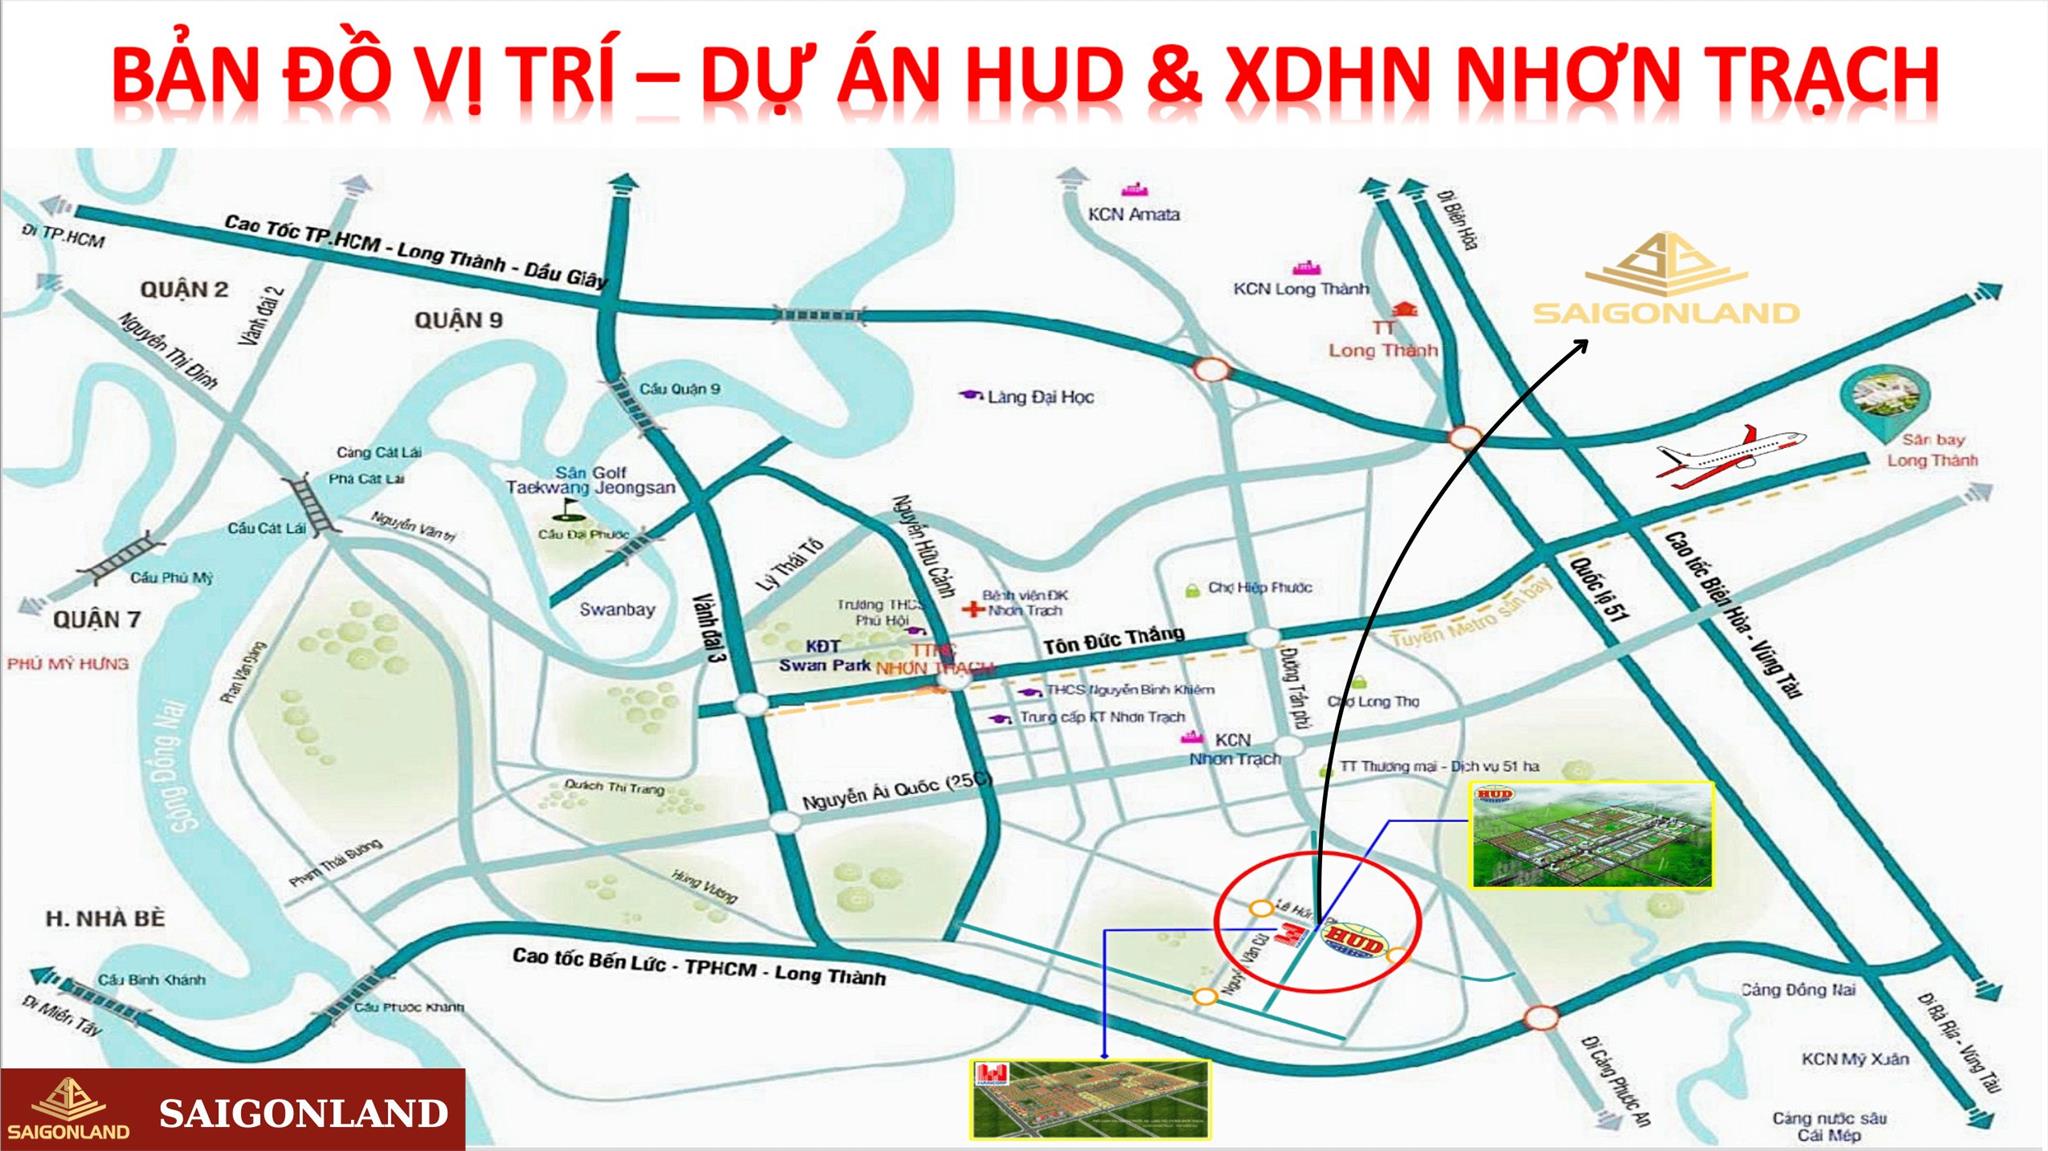 Saigonland Nhơn Trạch - Mua bán đất Nhơn Trạch - Dự án Hud Nhơn Trạch Đồng Nai. - Ảnh 4